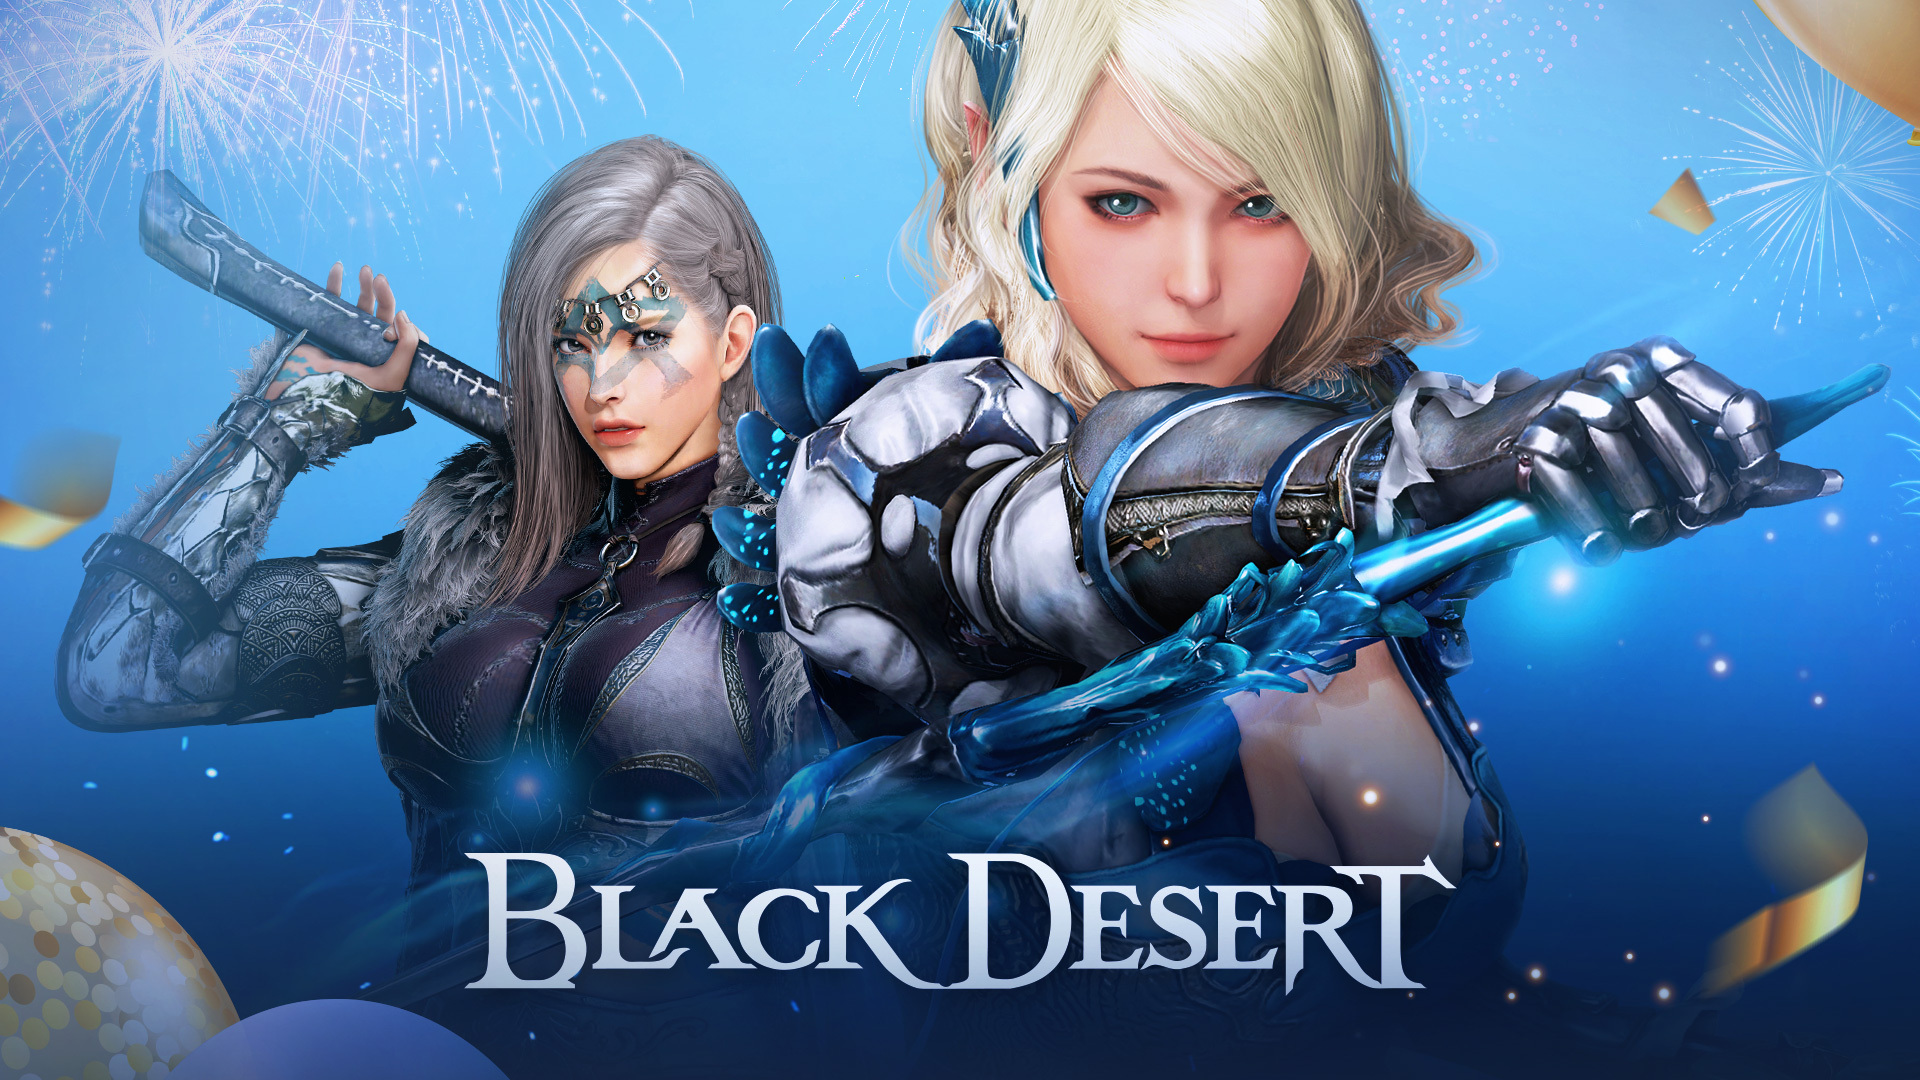 poster do mmorpg da pearl abyss, black desert. com duas personagens em posição de batalha